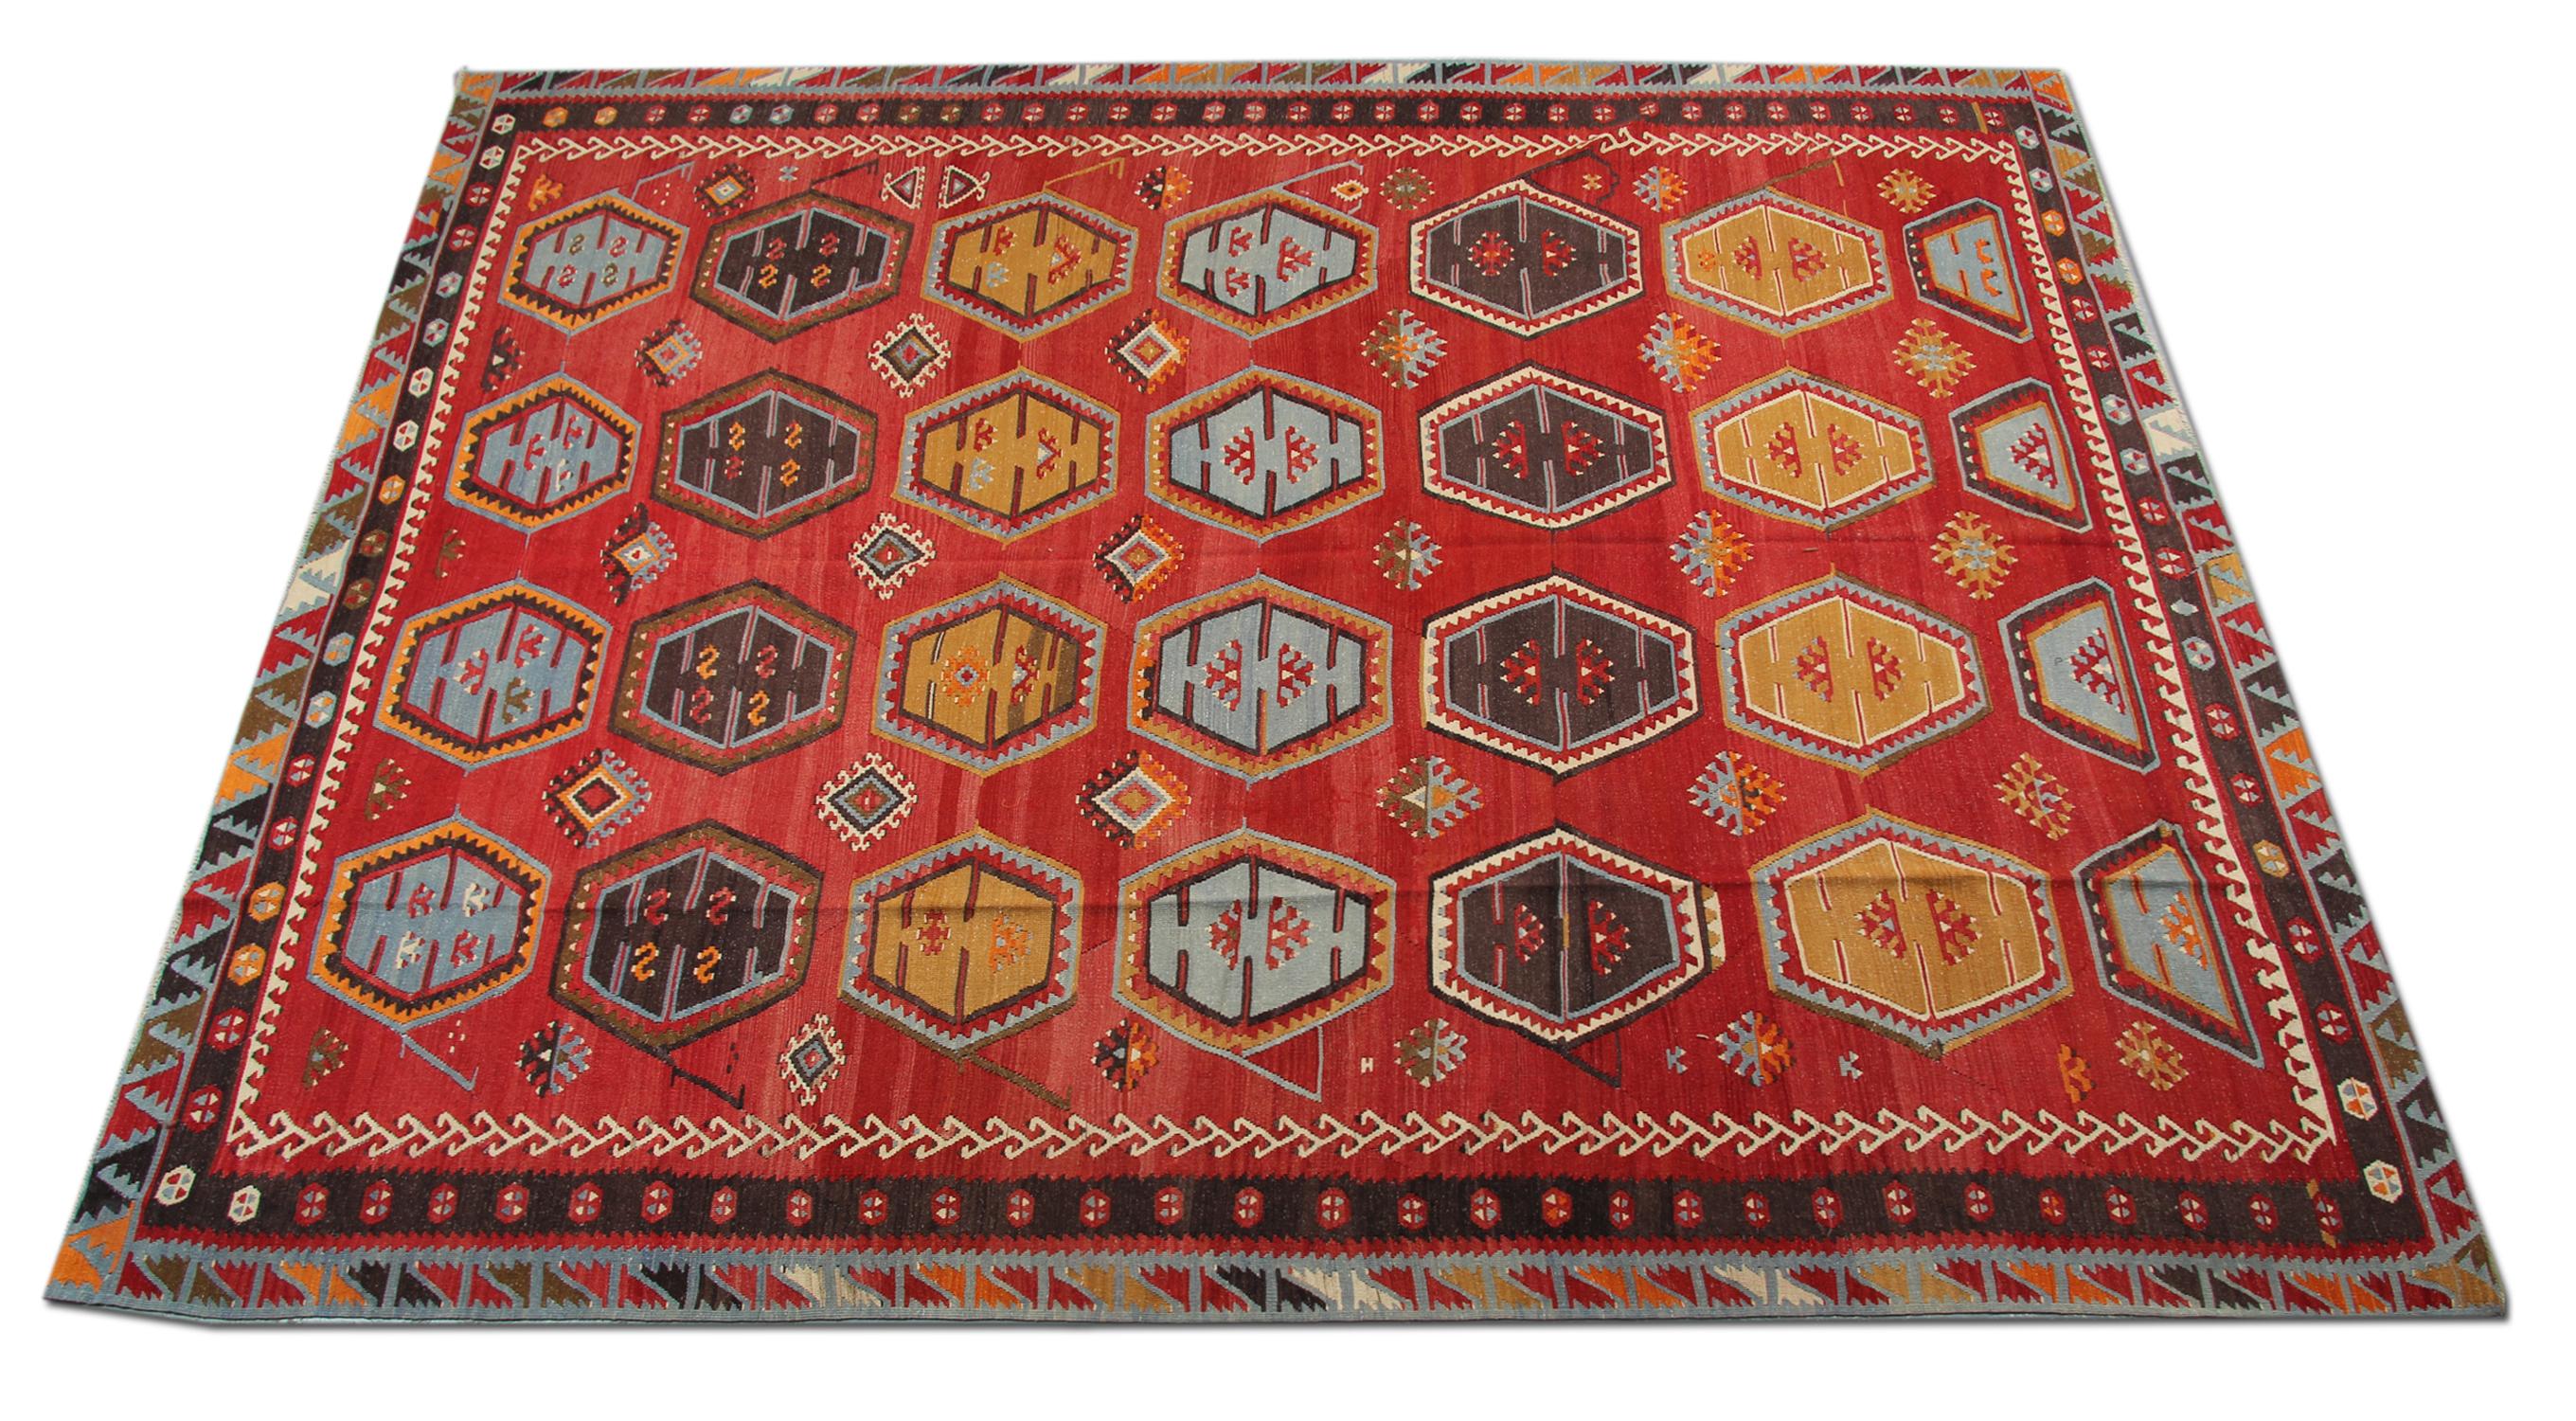 Die handgefertigten S¸arkis¸la-Kilim-Teppiche sind einer der dekorativsten Teppiche; türkische Kilims können ein zusätzliches Designelement für die Einrichtung des eigenen Heims sein.
Die meisten Kelims können immer in Harmonie mit dem Interieur